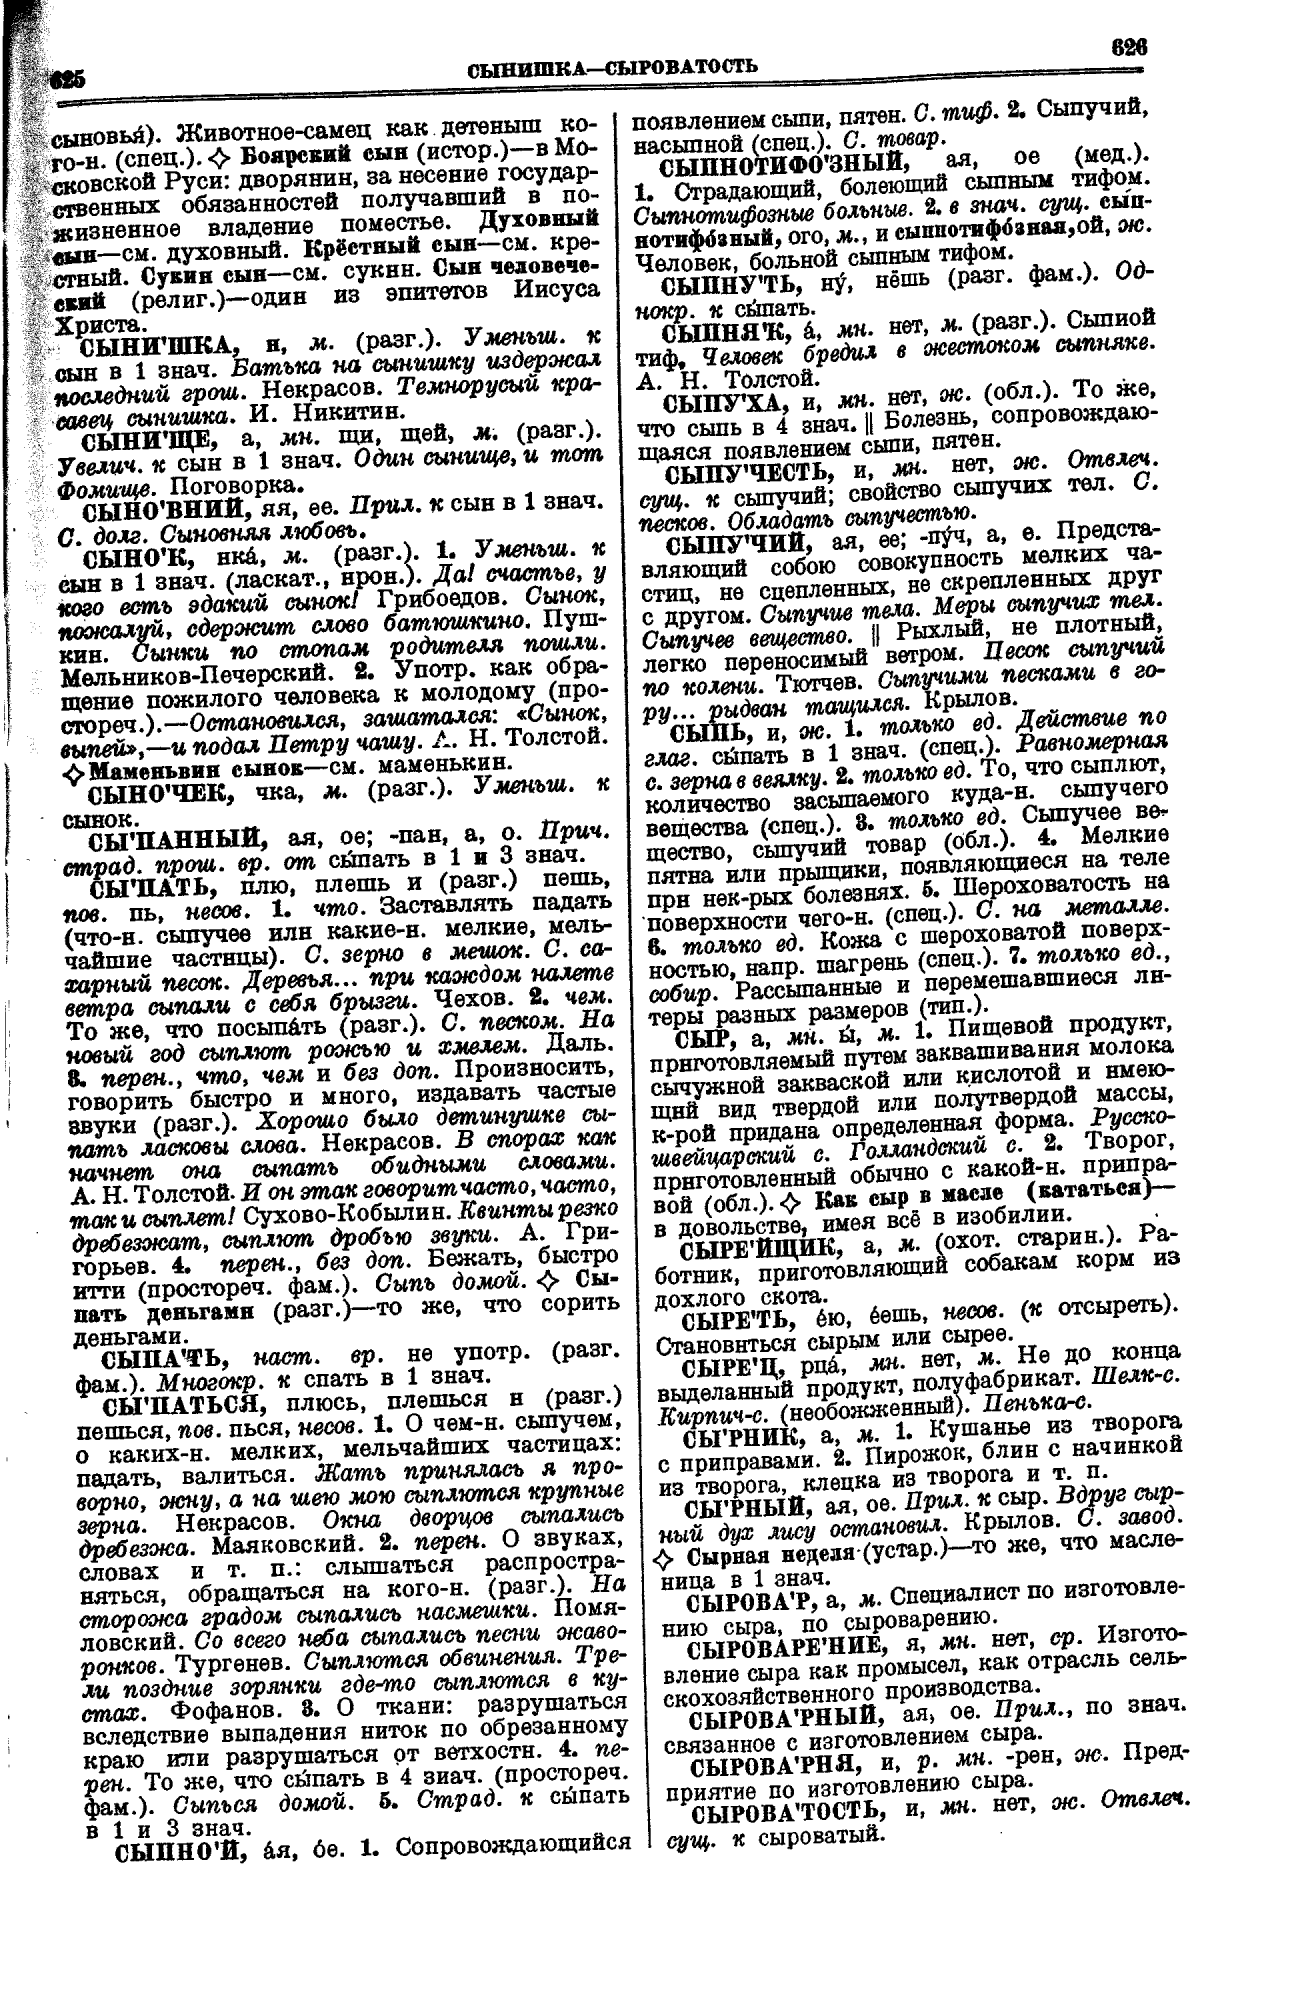 Сканированная страница толкового словаря Ушакова